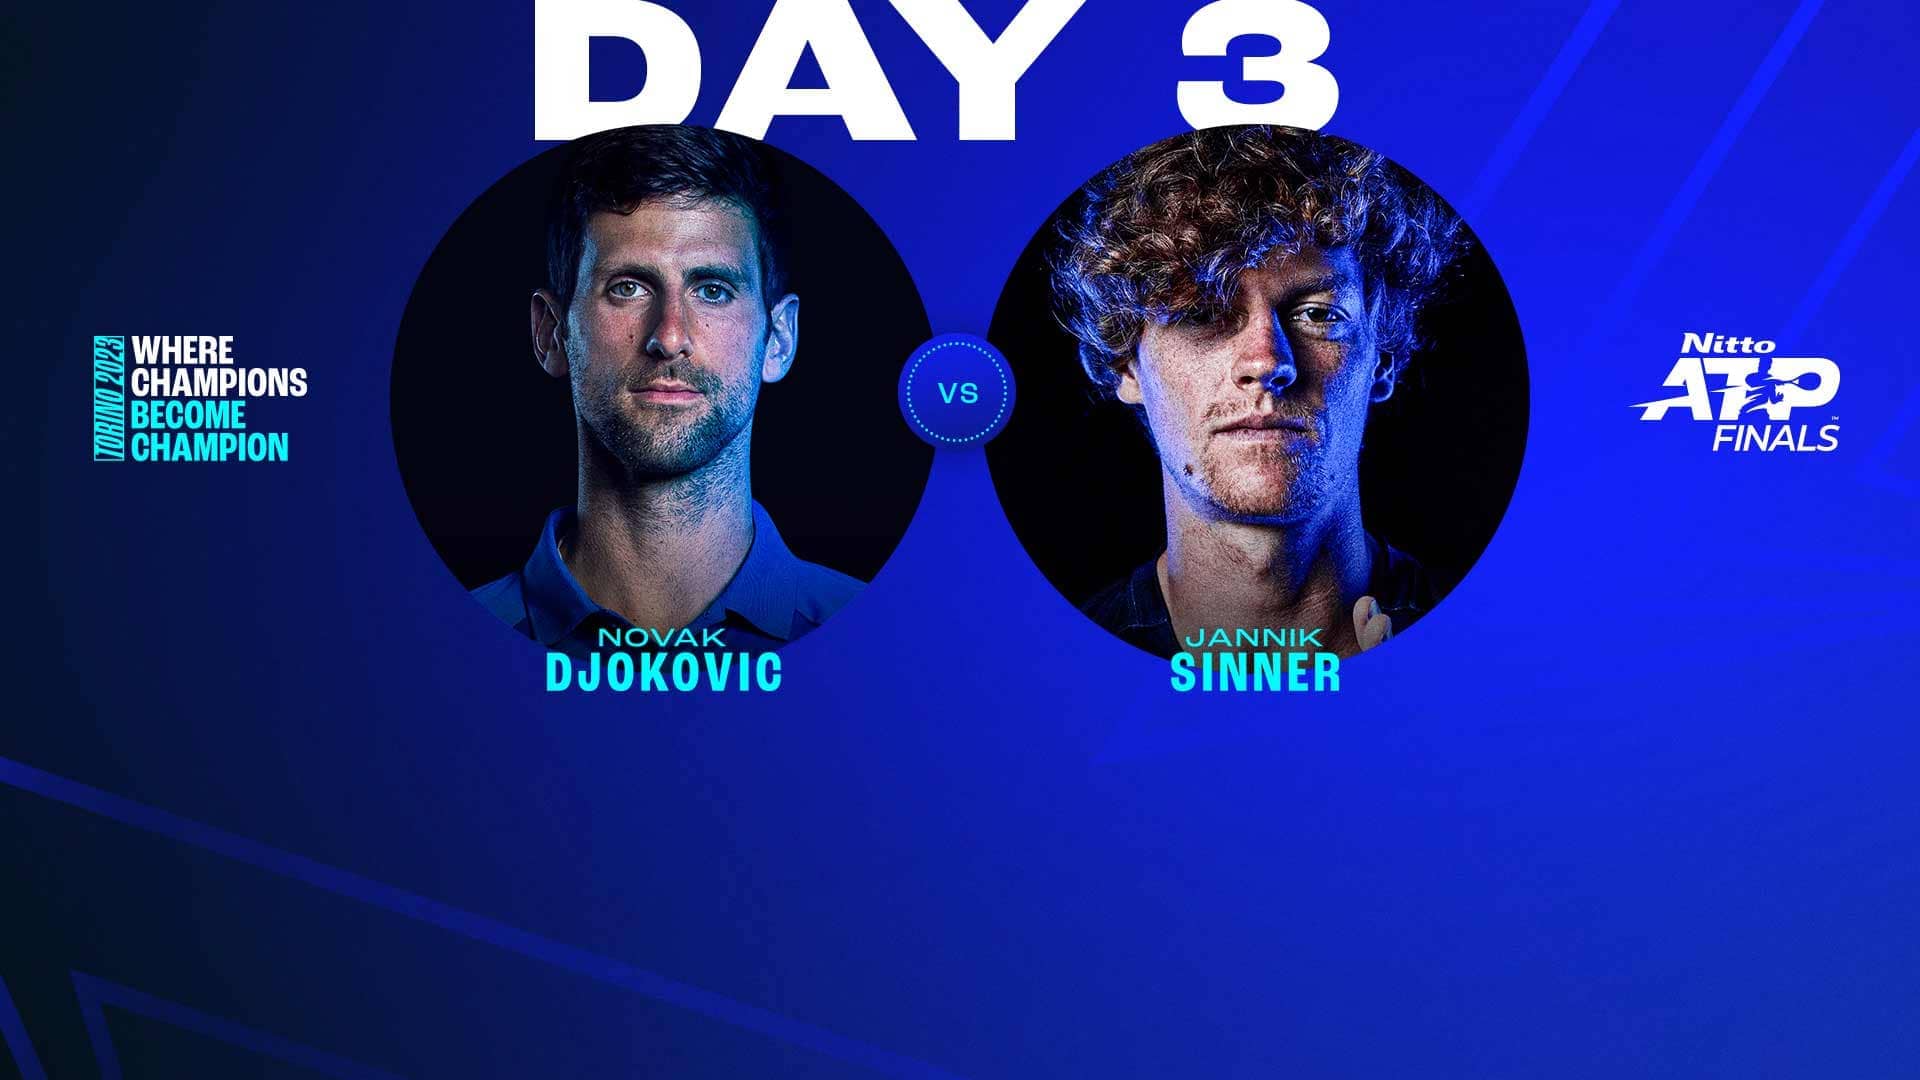 Novak Djokovic leads Jannik Sinner 3-0 in the pair's Lexus ATP Head2Head series.